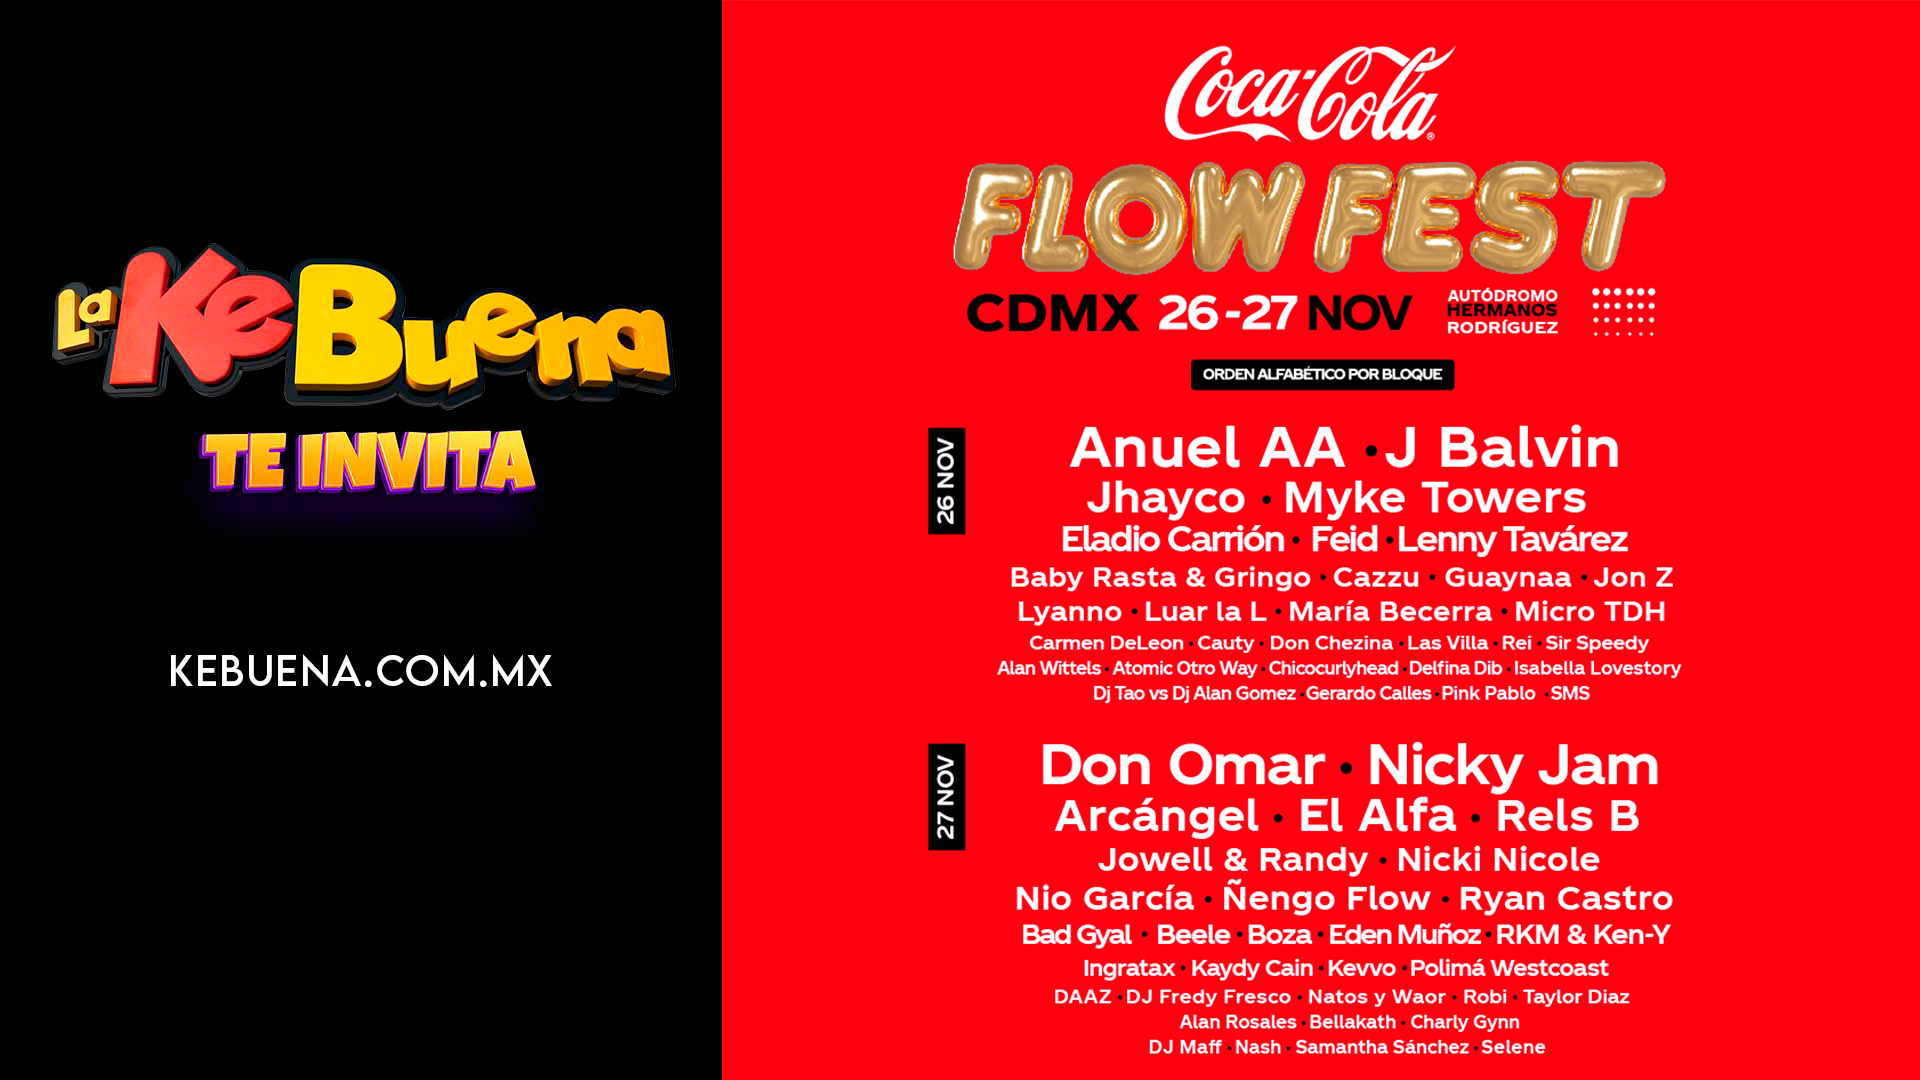 ¡LaKeBuena te invita al Coca Cola Flow Fest!